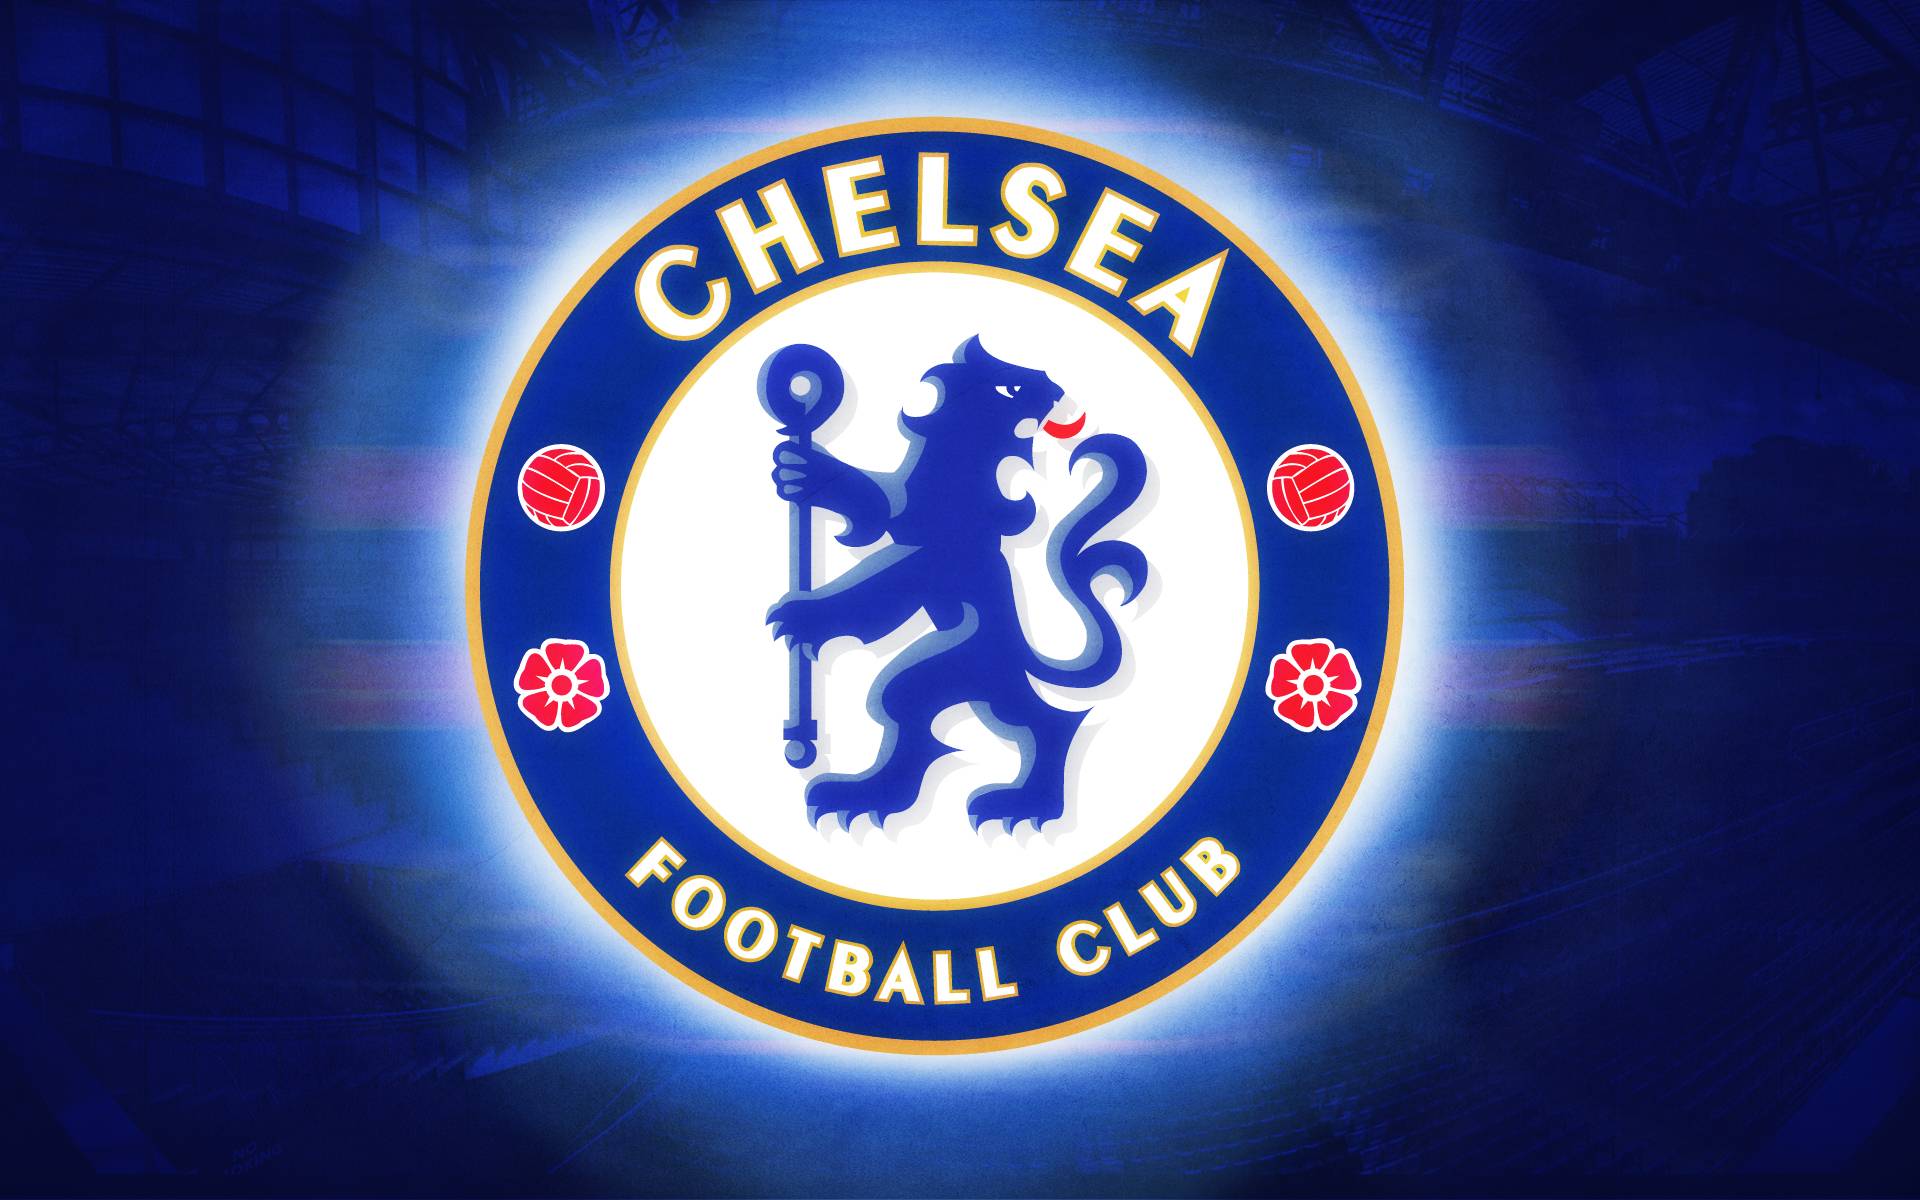 Ý nghĩa của logo Chelsea là gì? Người hâm mộ có biết điều này không?